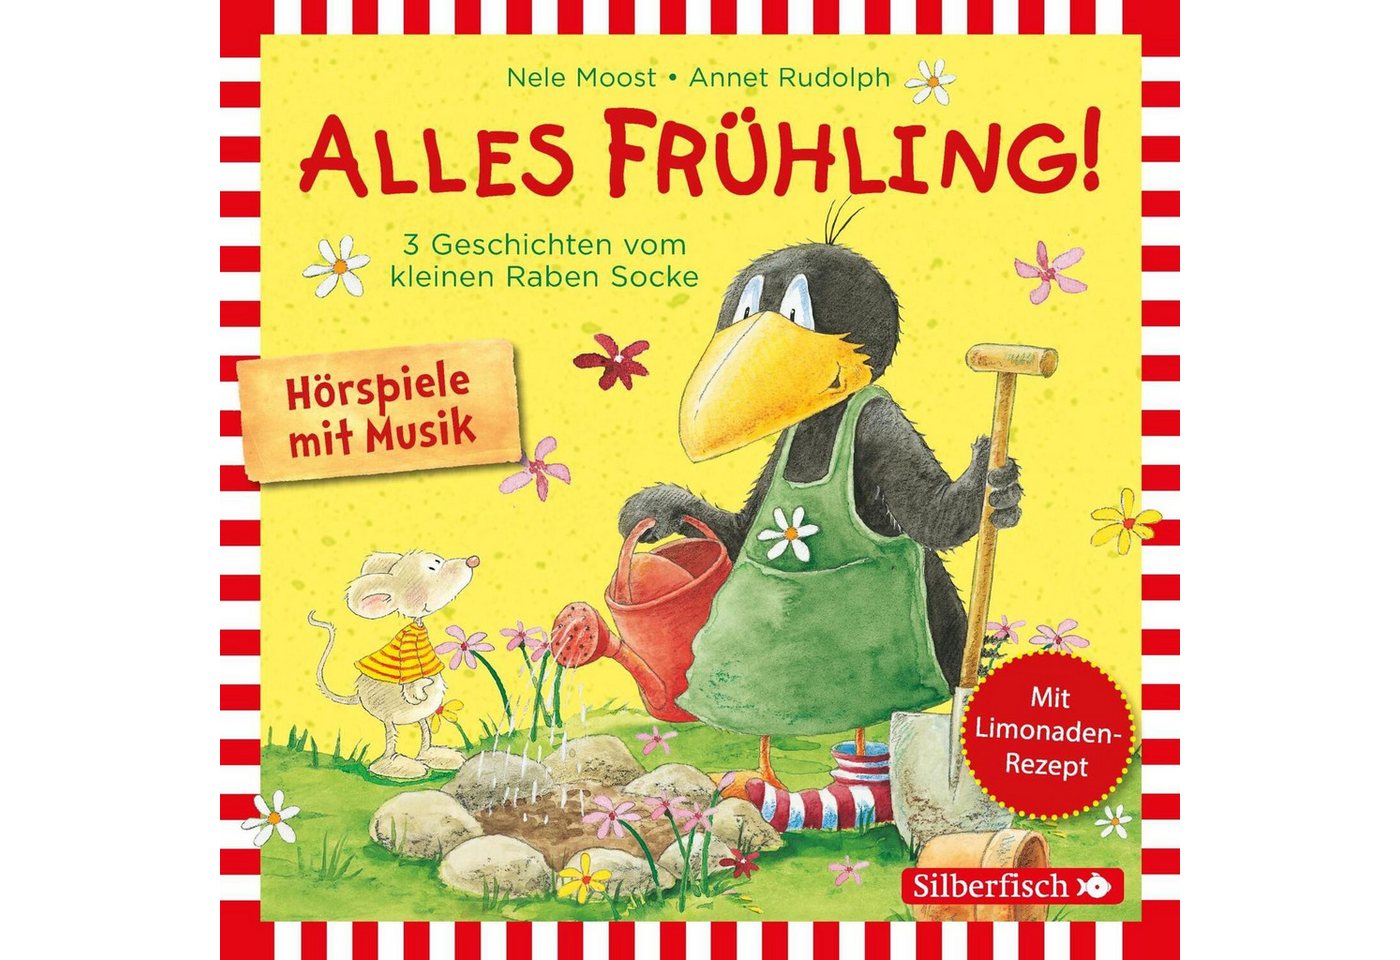 Silberfisch Verlag Hörspiel Alles Frühling!: Alles Freunde!, Alles wächst!, Alles gefärbt!... von Silberfisch Verlag